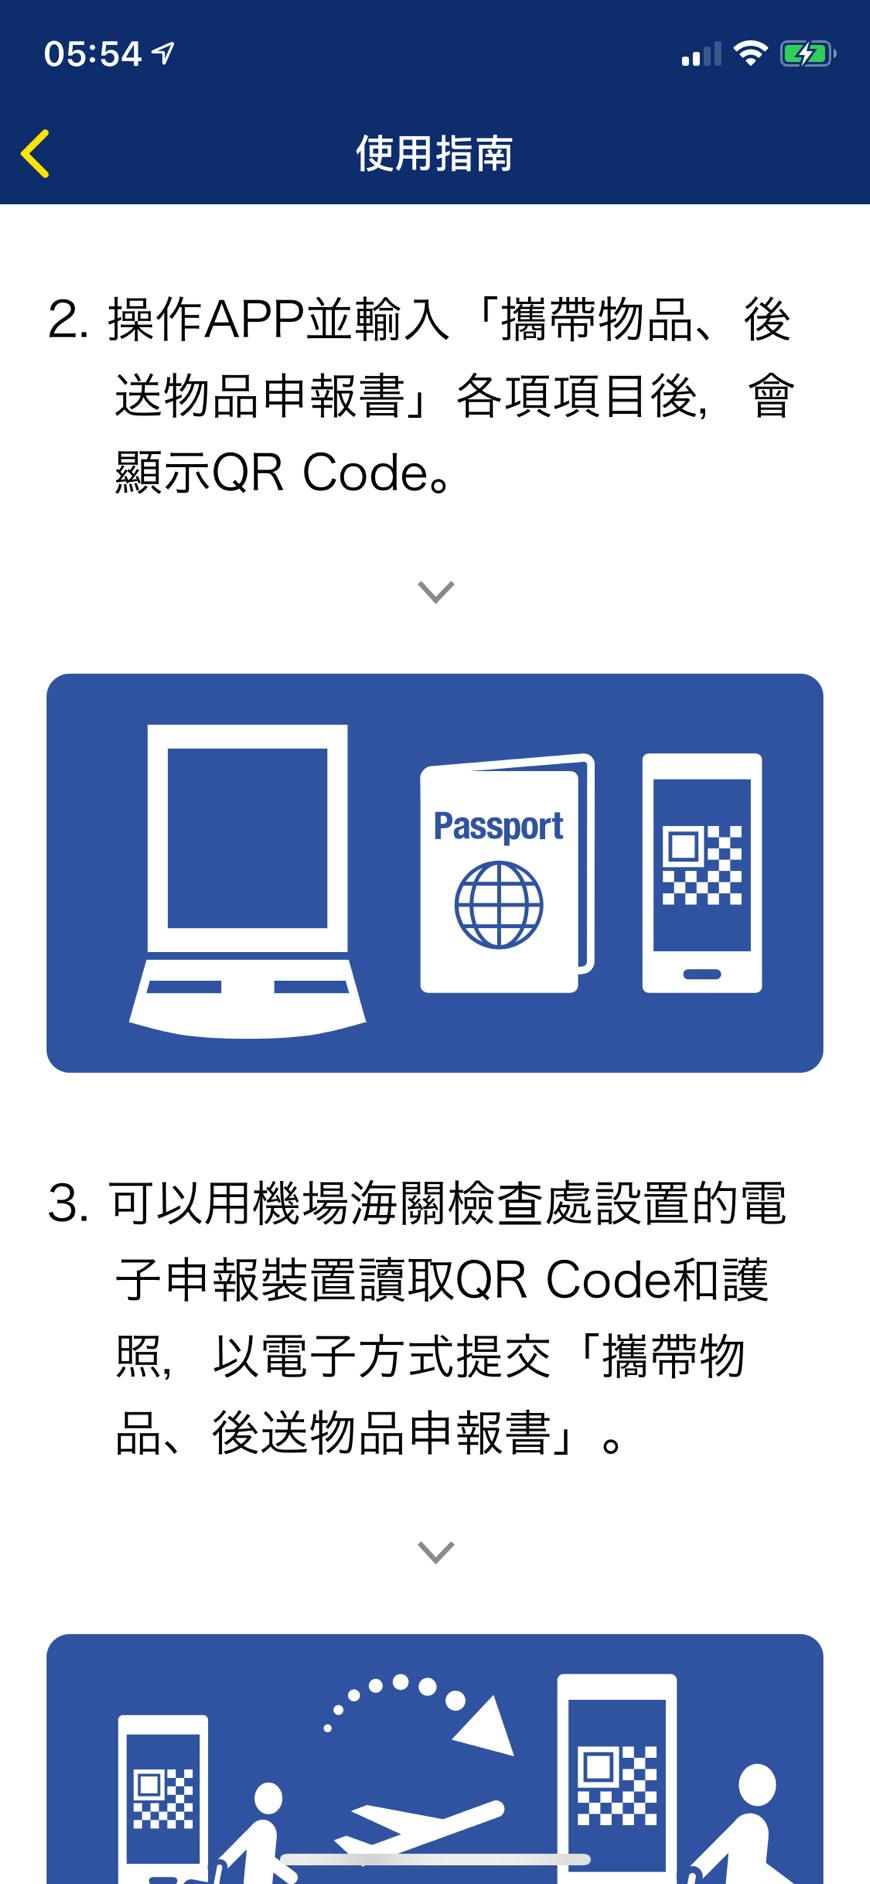 日本稅關app｜2019最新 海關電子申報App使用教學、出境入境自動通關攻略和入境卡填寫